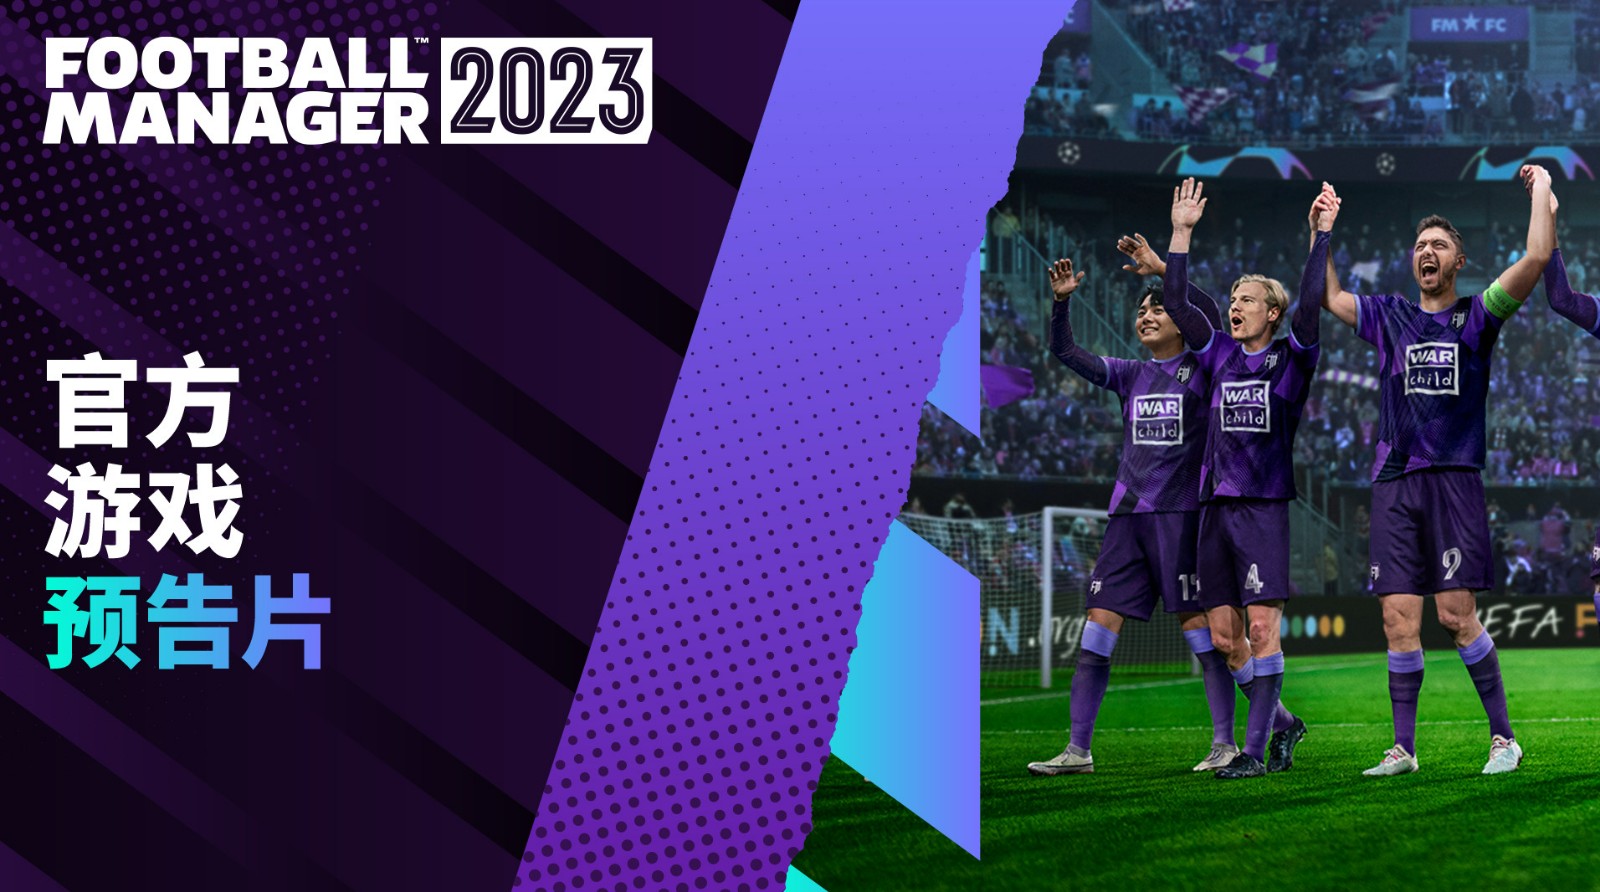 《足球经理2023》将于2022年11月8日发售 将支持更多游戏平台